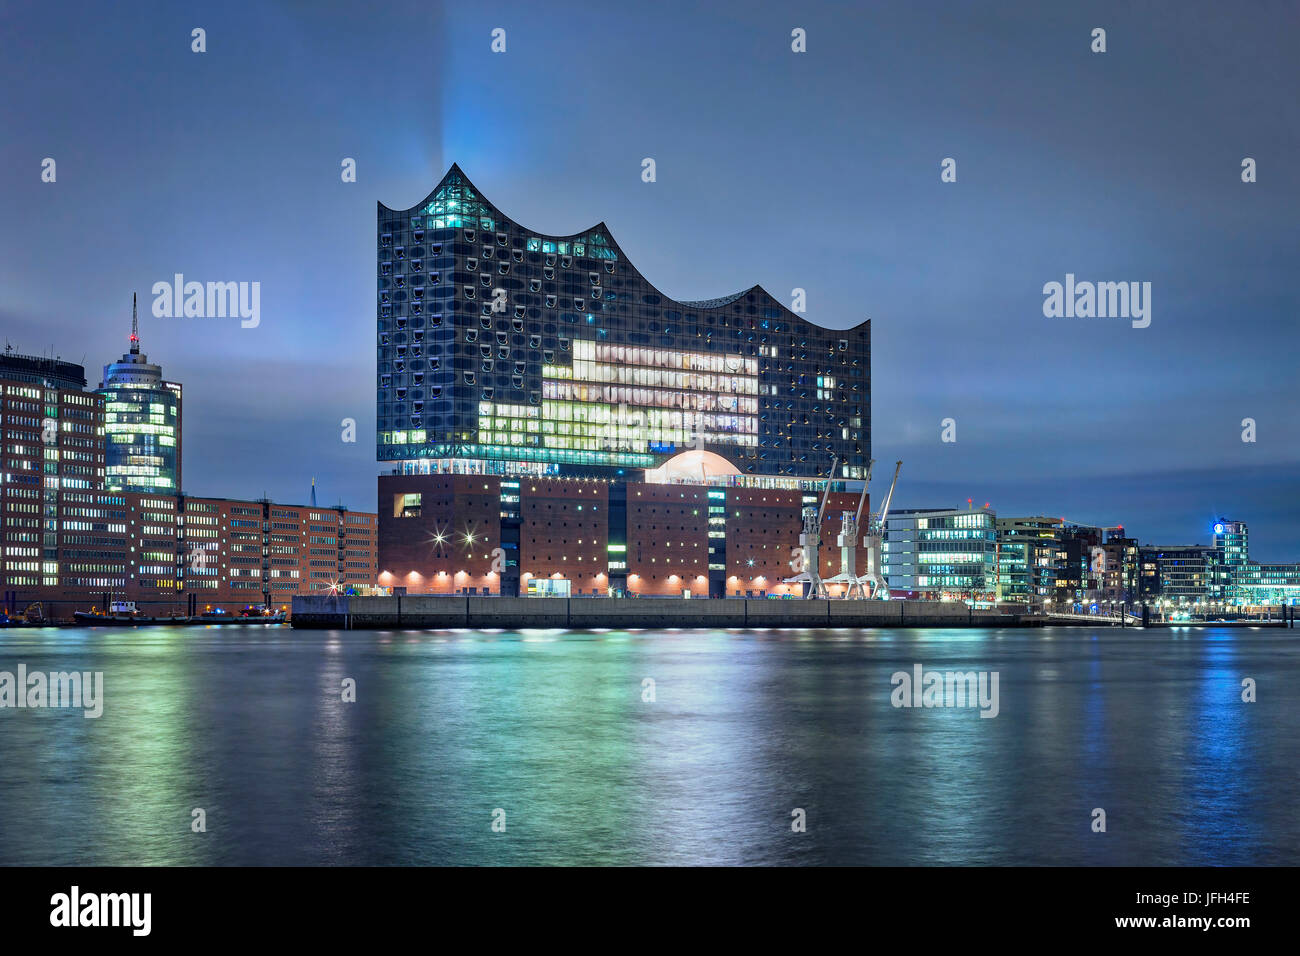 Stadtbild von Elbphilharmonie und anderen Gebäuden Stockfoto